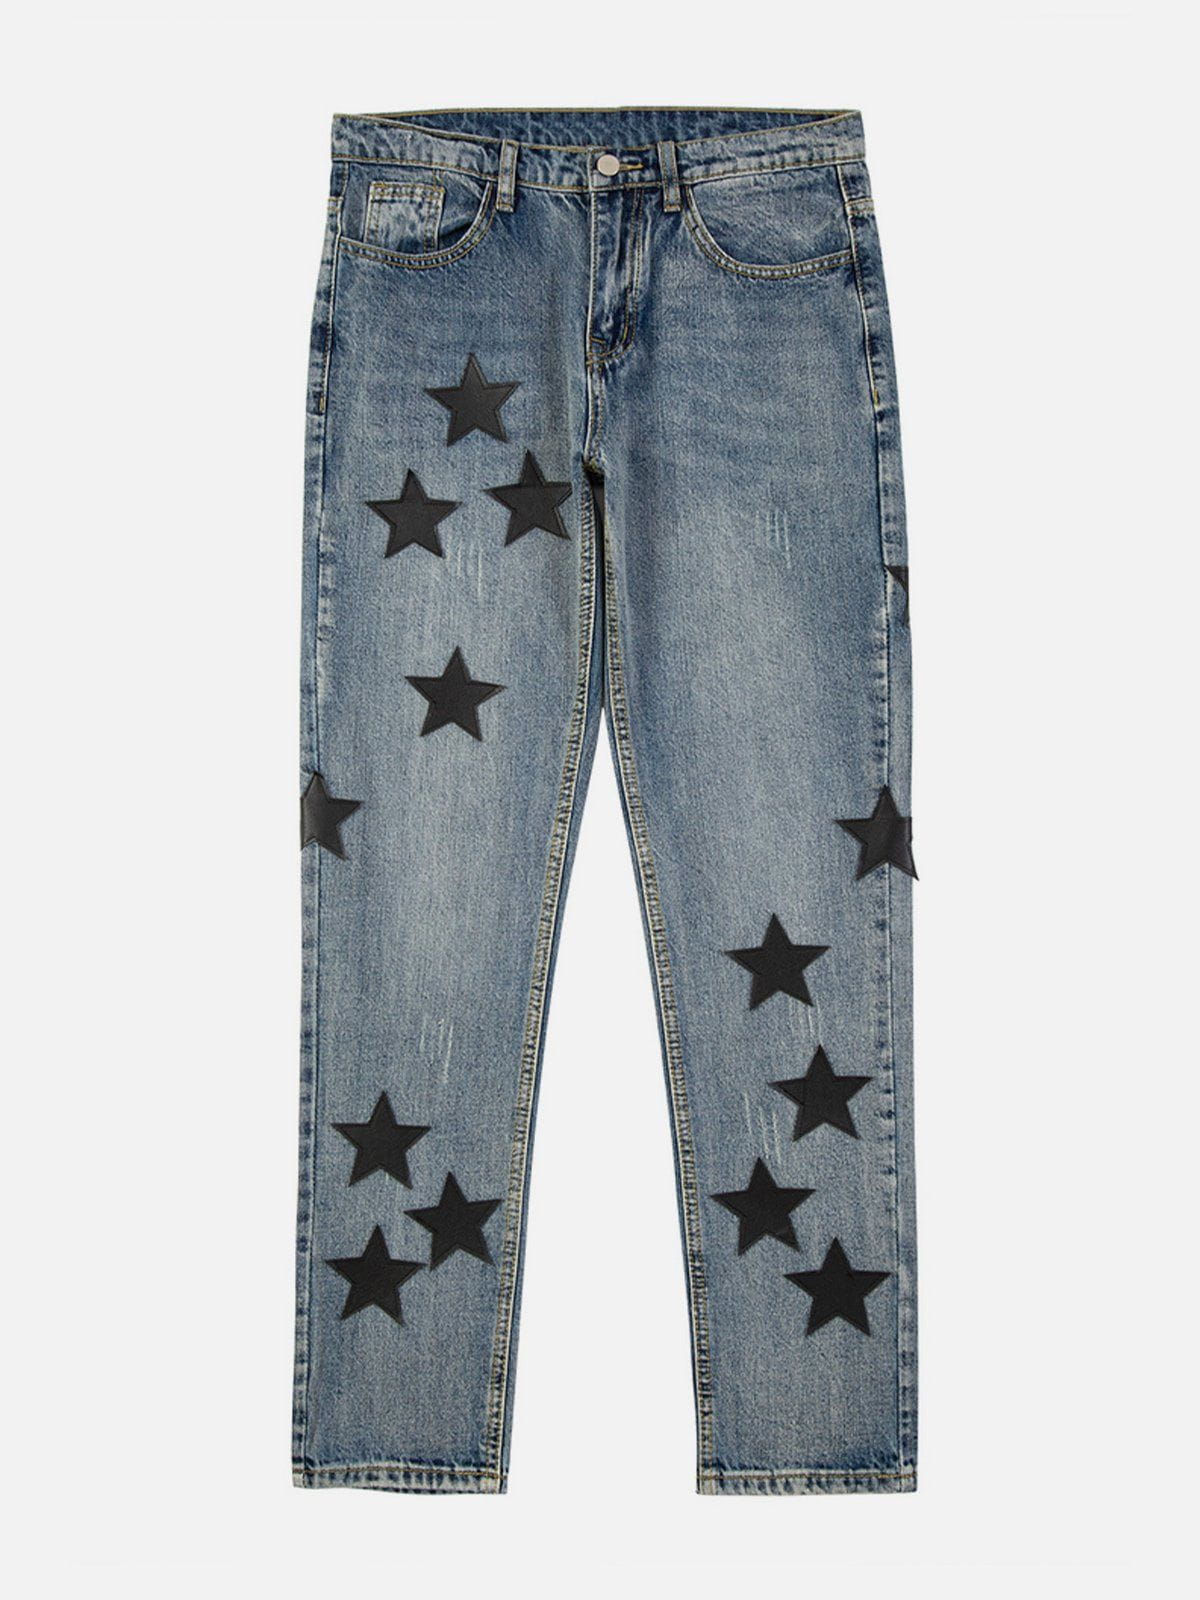 Eprezzy® - Embroidery Multi Star Jeans Streetwear Fashion - eprezzy.com